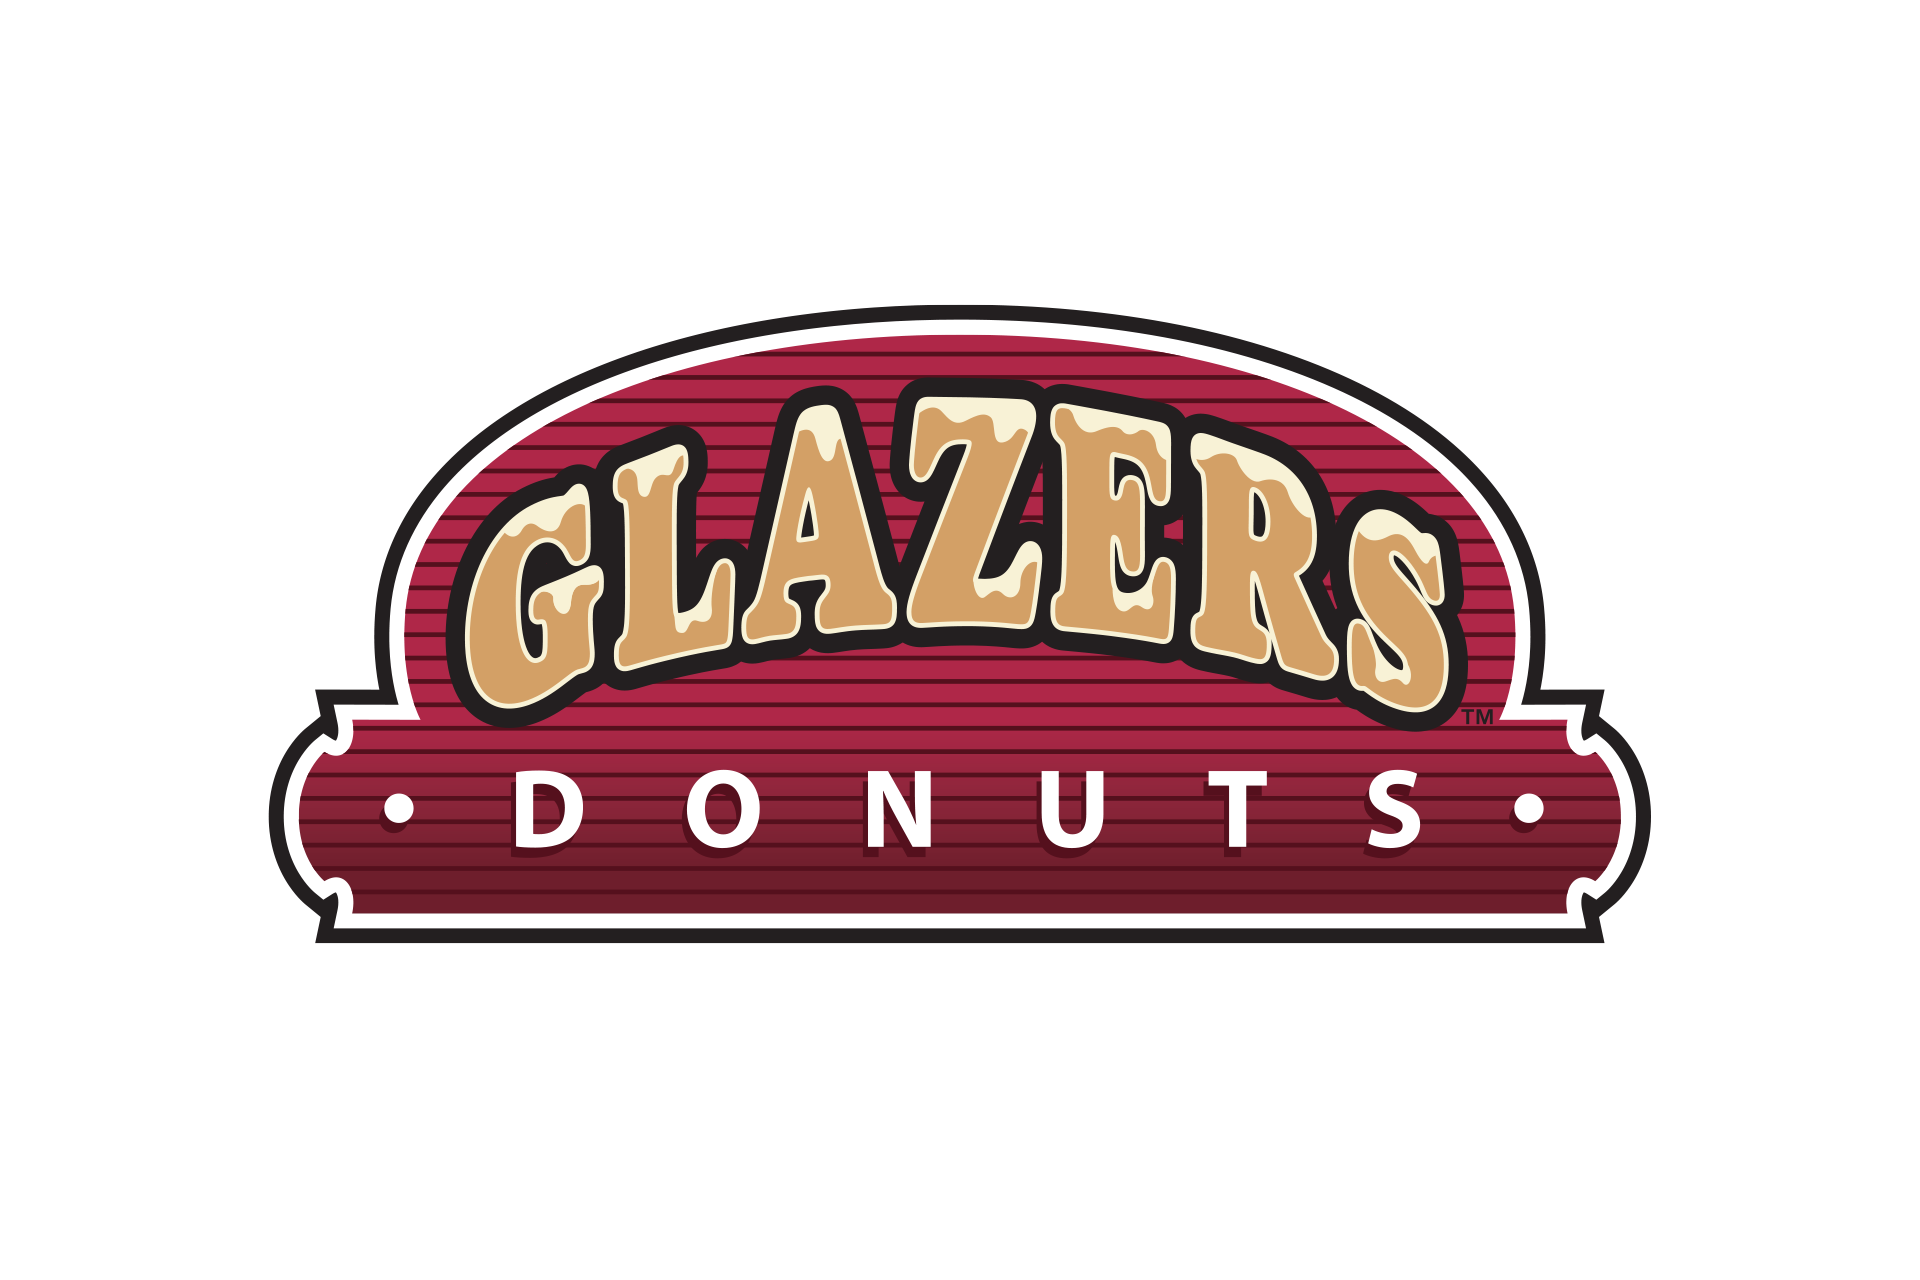 Glazers Donuts logo